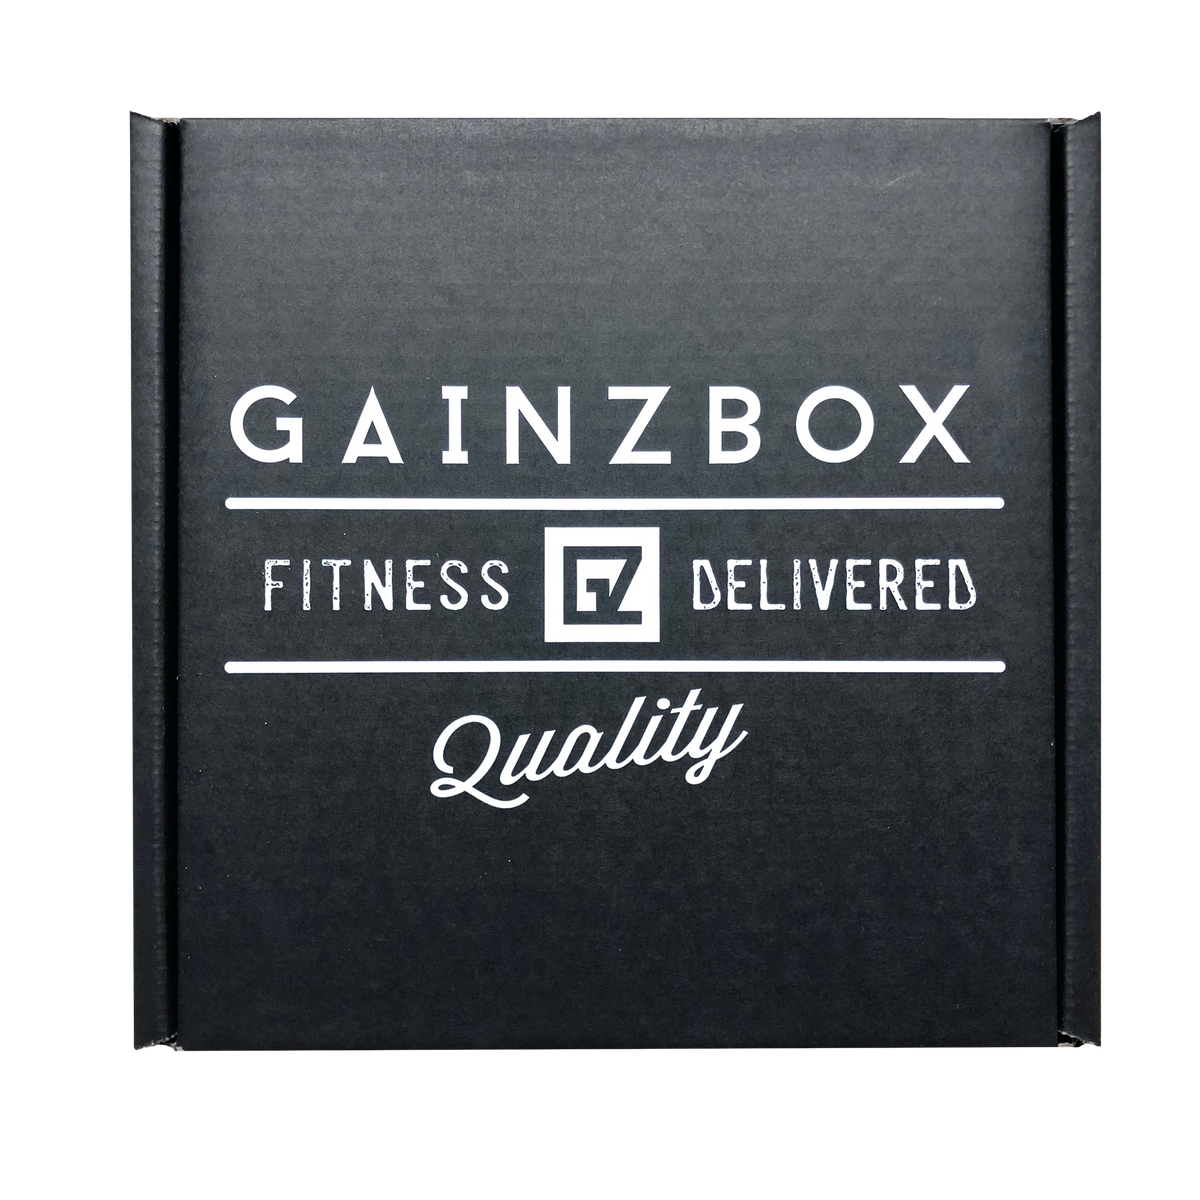 THE BORO BOX - Fitness Subscription Box – The Boro Box